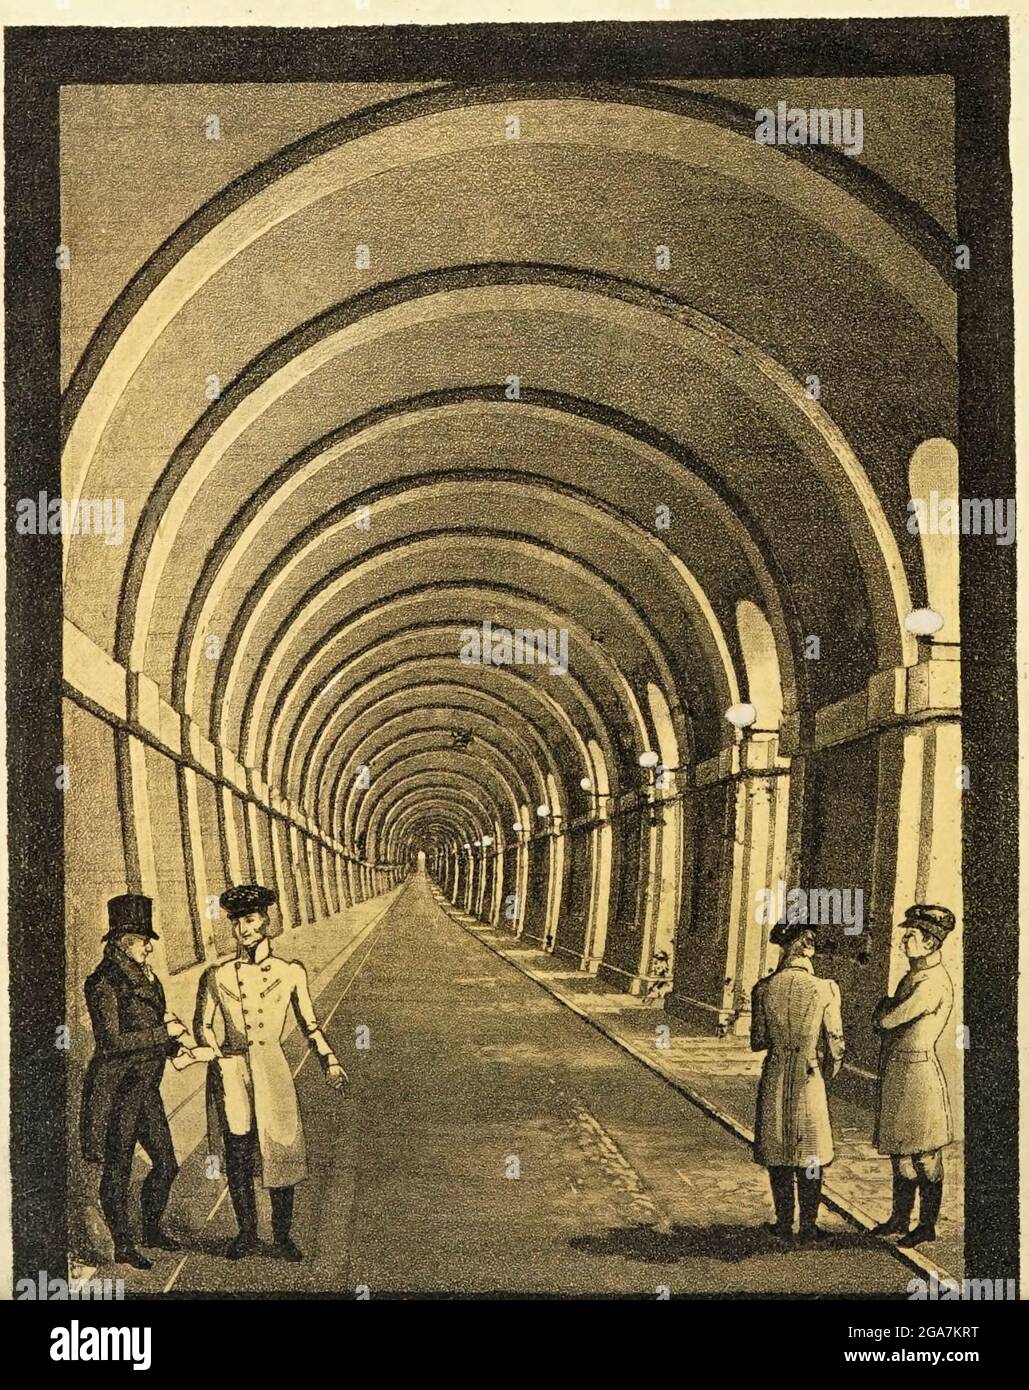 Il Thames Tunnel è un tunnel sotto il Tamigi di Londra, che collega Rotherhithe e Wapping. Misura 35 piedi (11 m) di larghezza per 20 piedi (6 m) di altezza ed è 1,300 piedi (396 m) di lunghezza, che corre ad una profondità di 75 piedi (23 m) sotto la superficie del fiume misurata con l'alta marea. È il primo tunnel conosciuto per essere stato costruito con successo sotto un fiume navigabile ed è stato costruito tra il 1825 e il 1843 da Marc Brunel e suo figlio Isambard utilizzando lo scudo tunneling recentemente inventato dal maggiore Brunel e Thomas Cochrane. Il tunnel era originariamente progettato per carrozze trainate da cavalli, ma era principalmente Foto Stock